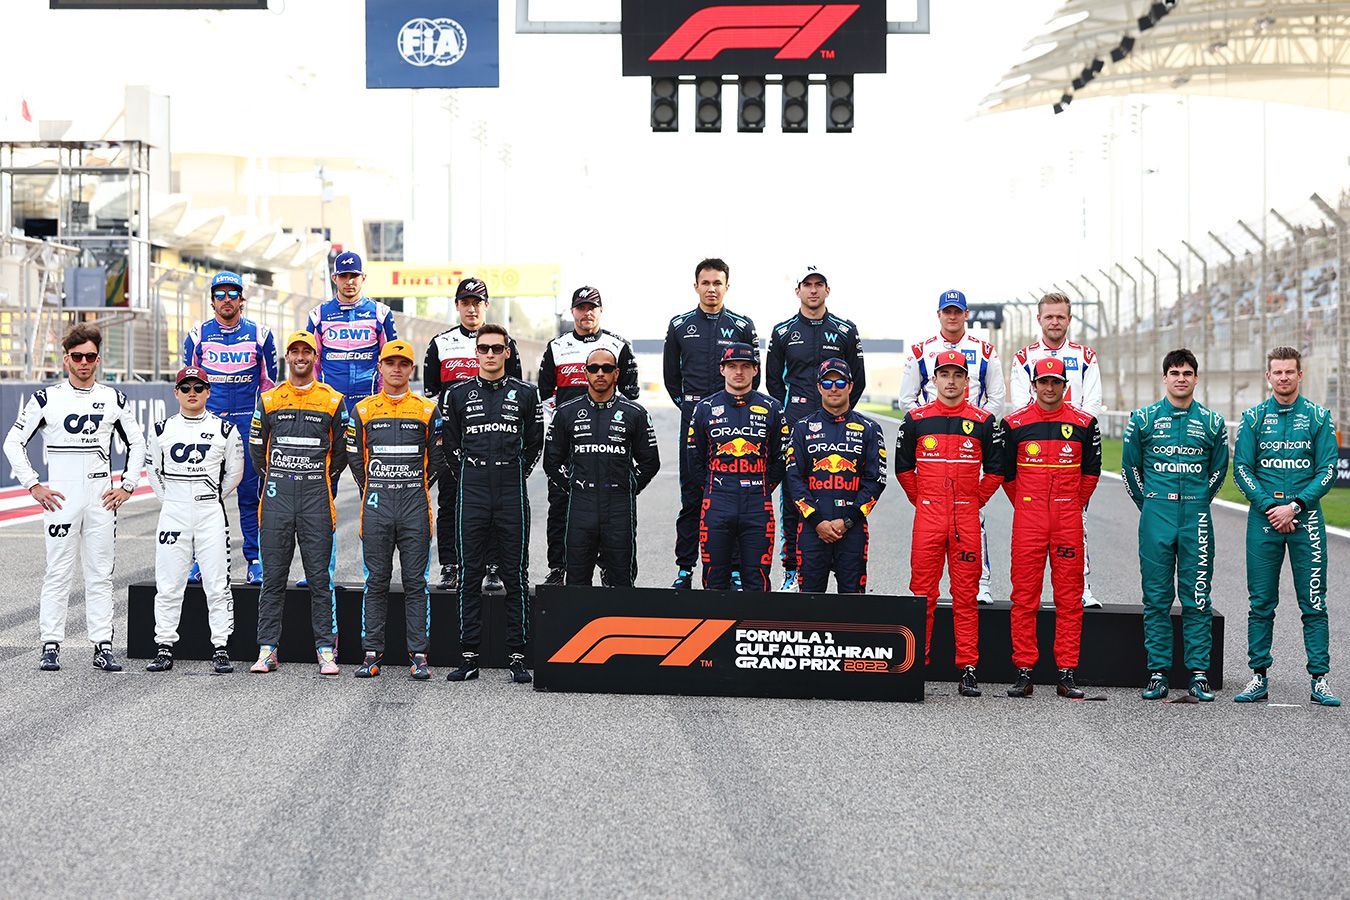 В Испании сообщили, что в Формуле-1 планируется обмен гонщиками между командами